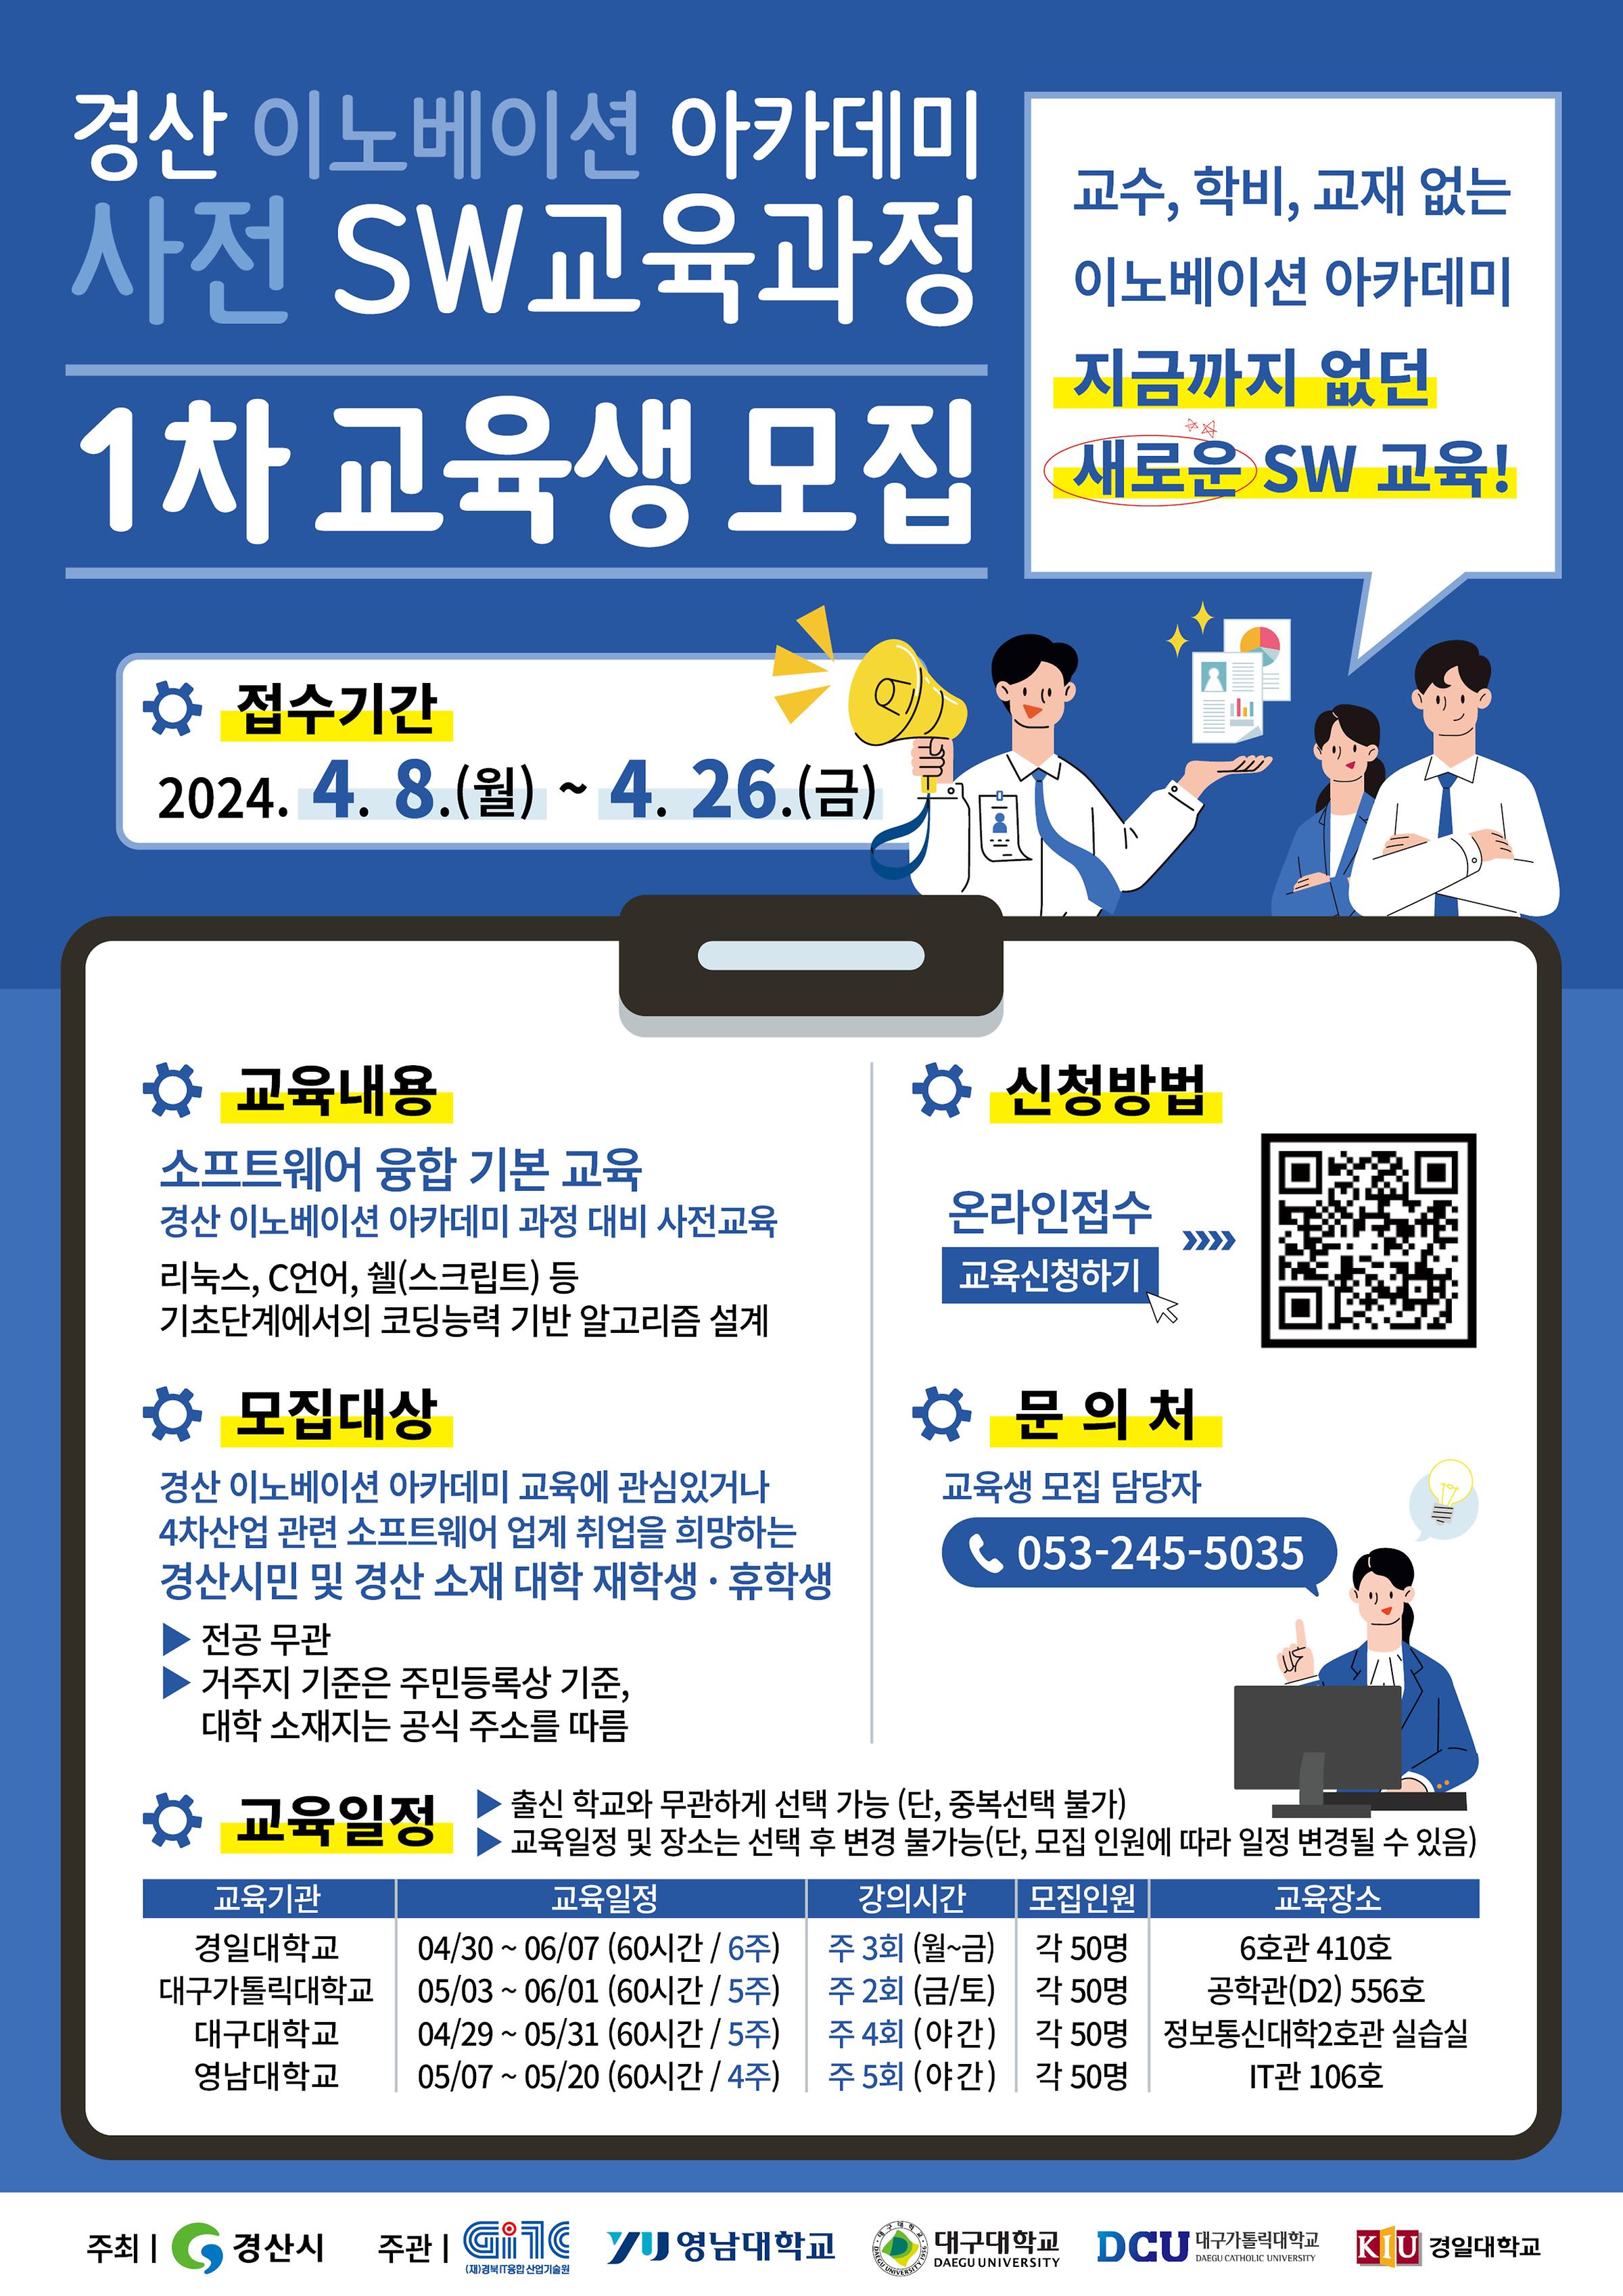 [교외활동] 『경산이노베이션아카데미 사전 SW교육과정』 1차 교육생 모집